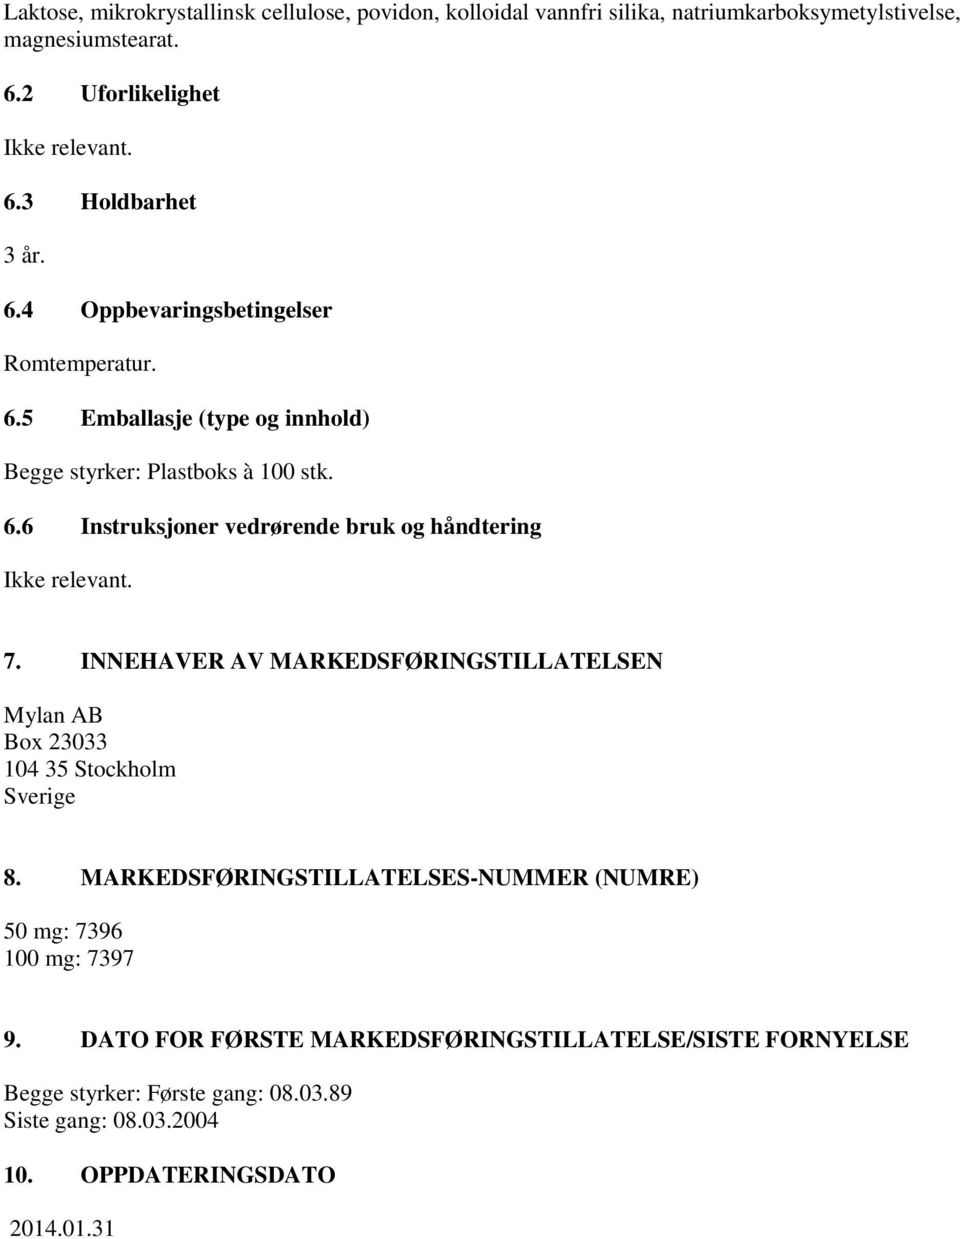 7. INNEHAVER AV MARKEDSFØRINGSTILLATELSEN Mylan AB Box 23033 104 35 Stockholm Sverige 8. MARKEDSFØRINGSTILLATELSES-NUMMER (NUMRE) 50 mg: 7396 100 mg: 7397 9.